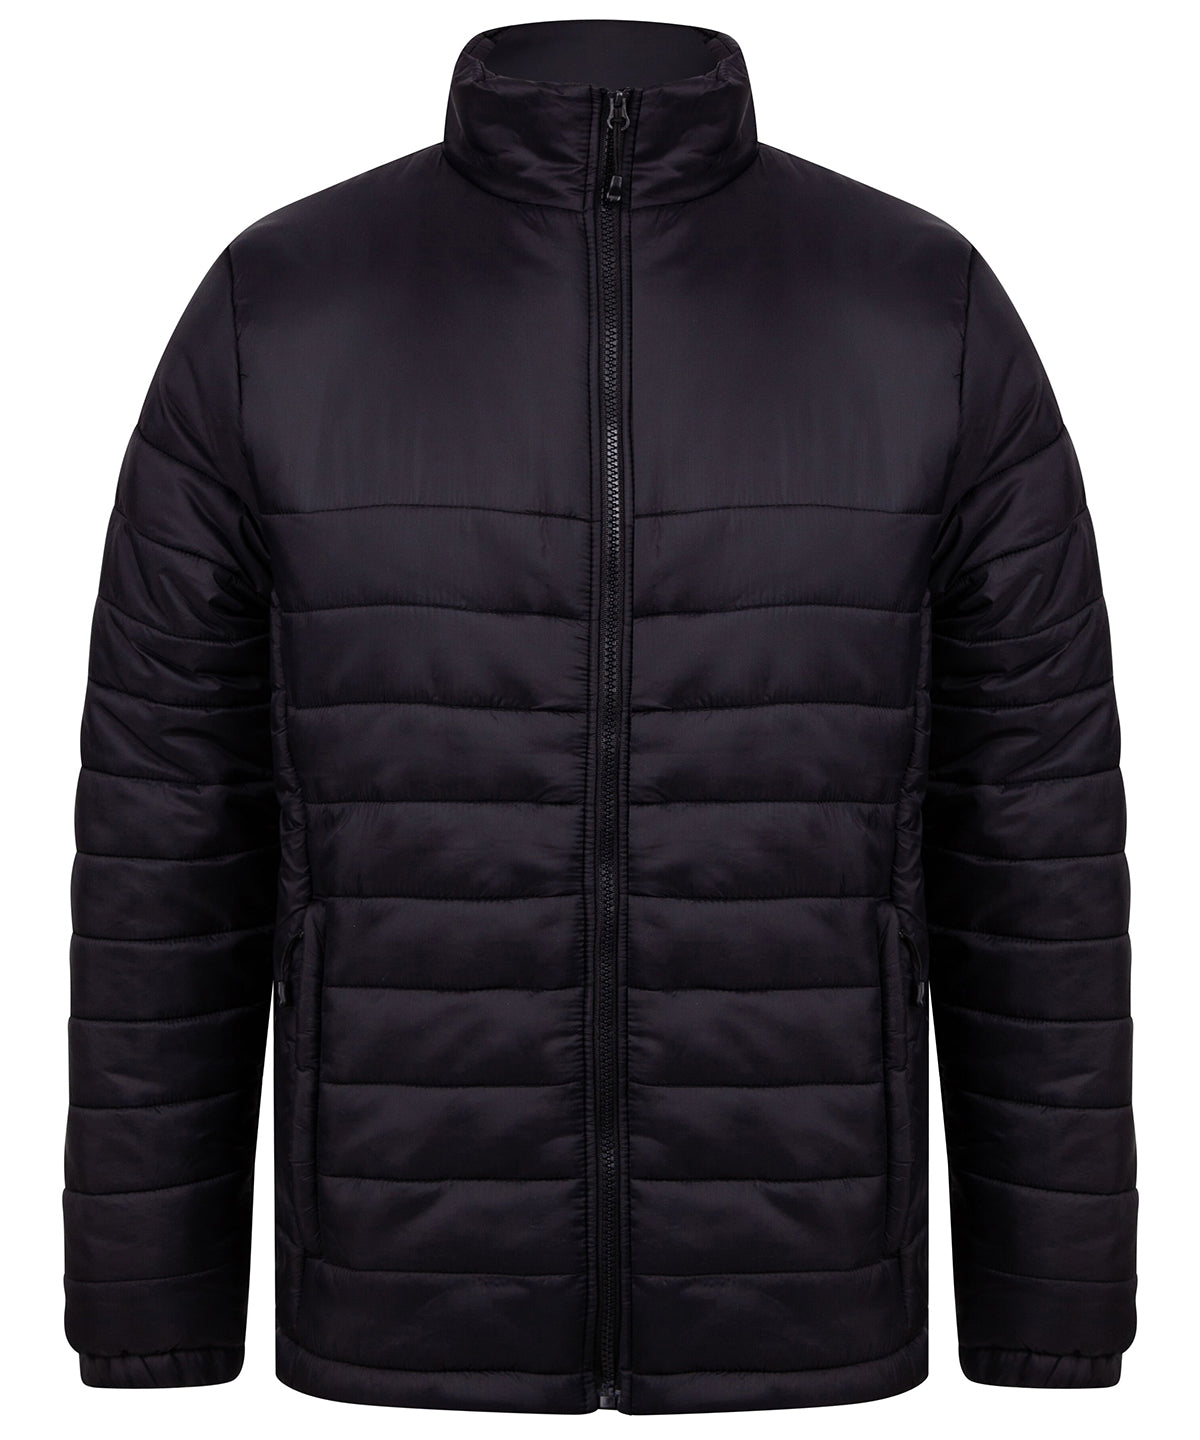 Personalised Jackets - Black Henbury Unisex padded jacket